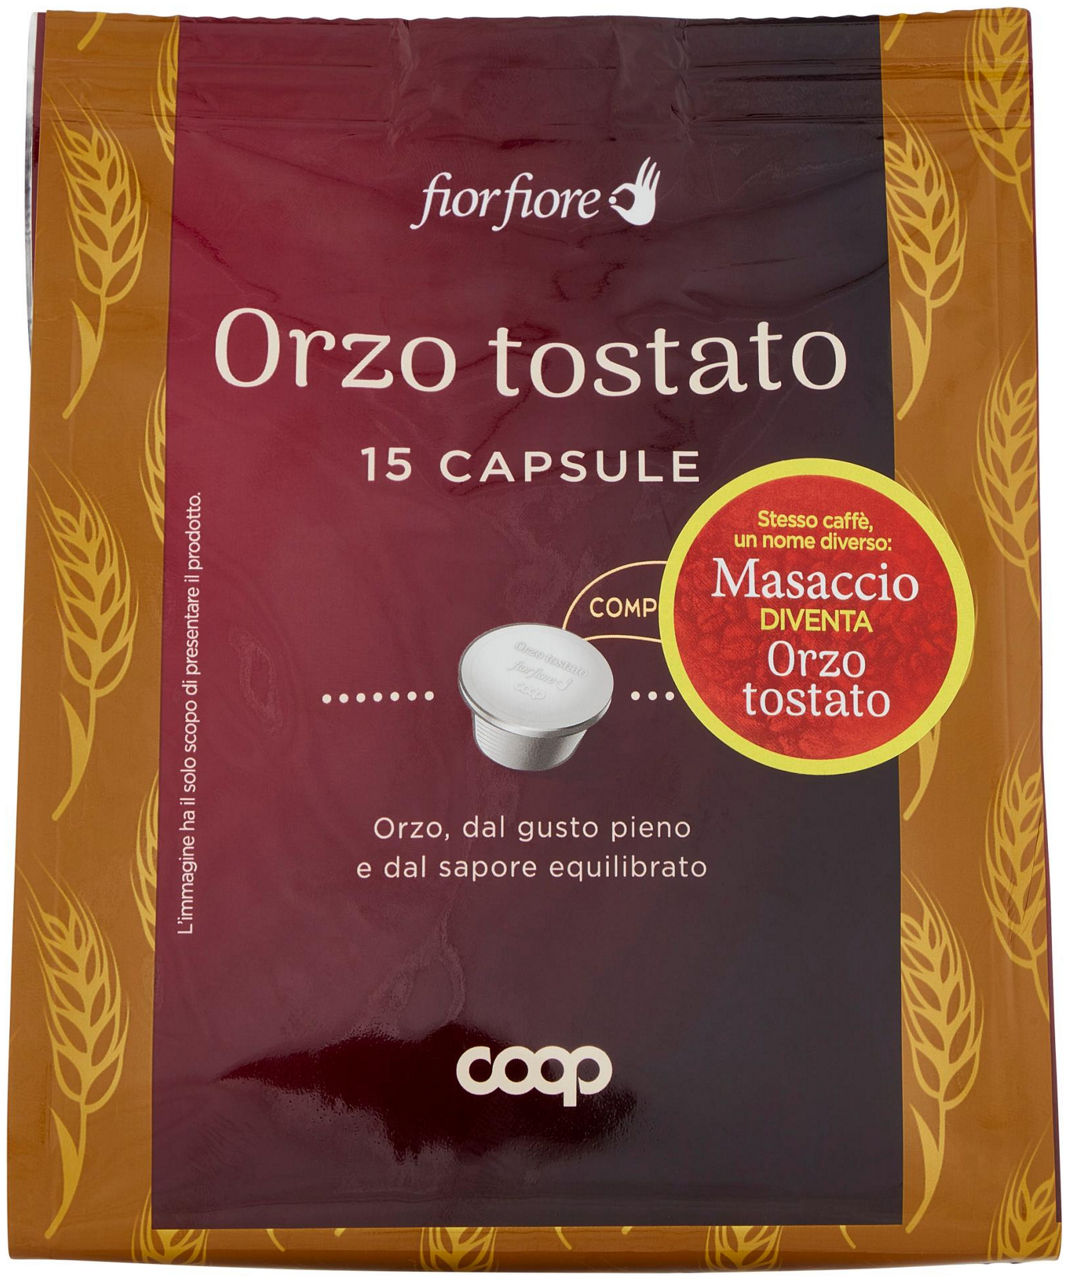 ORZO TOSTATO IN CAPSULE 'MASACCIO' FIOR FIORE COOP PZ. 15 SACCHETTO G 75 - 0